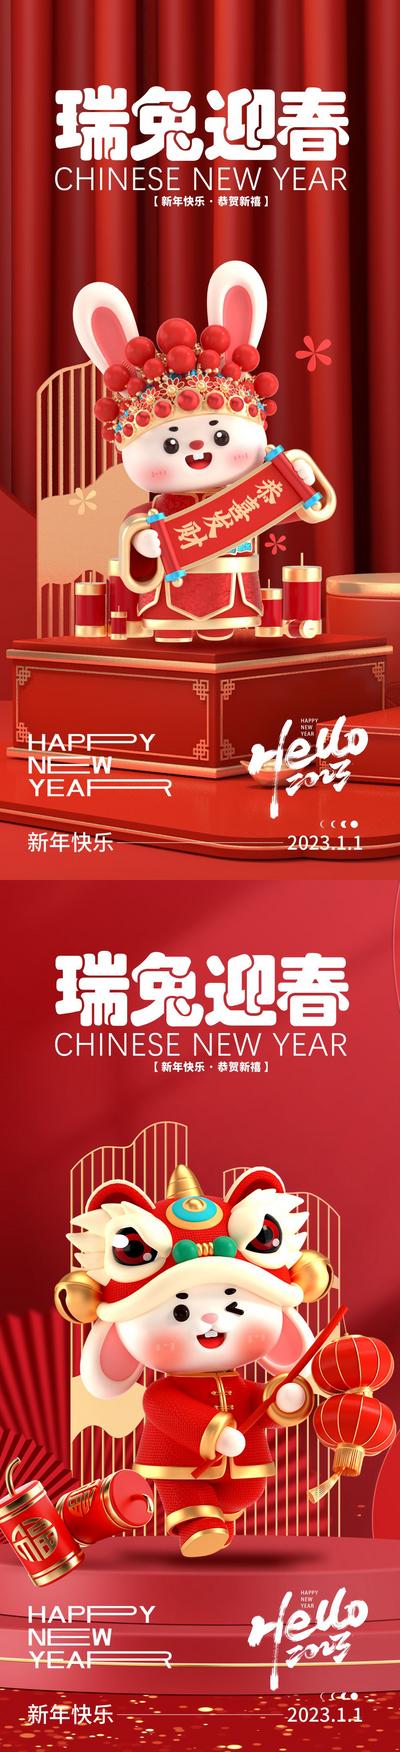 南门网 海报 公历节日 元旦 兔年 新年 国潮 兔子 舞狮 系列